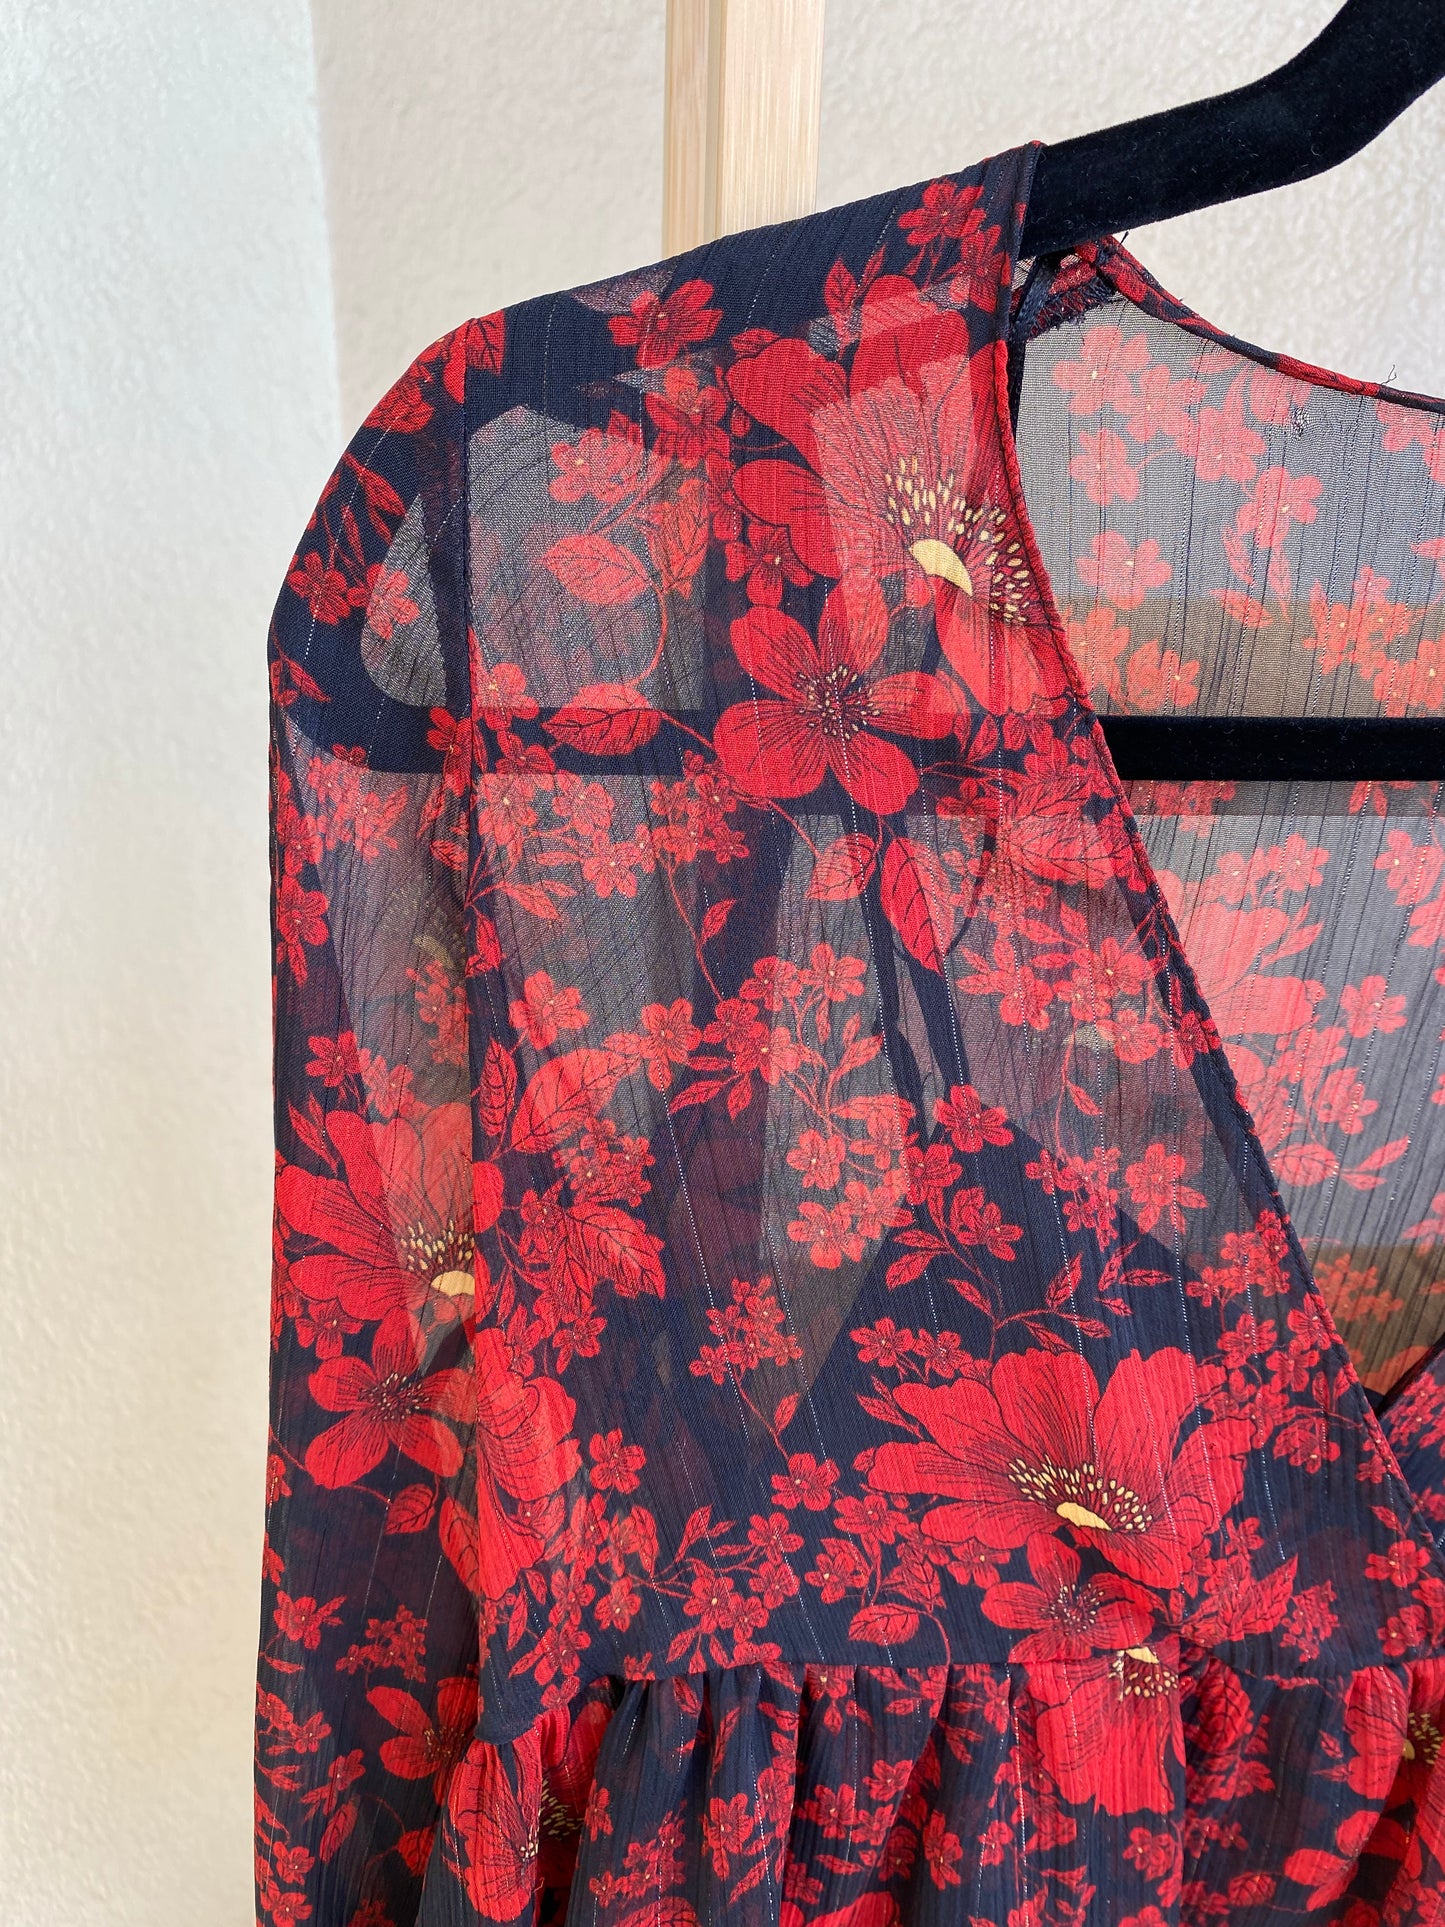 Robe Zara voilage et motifs fleuris Taille XS